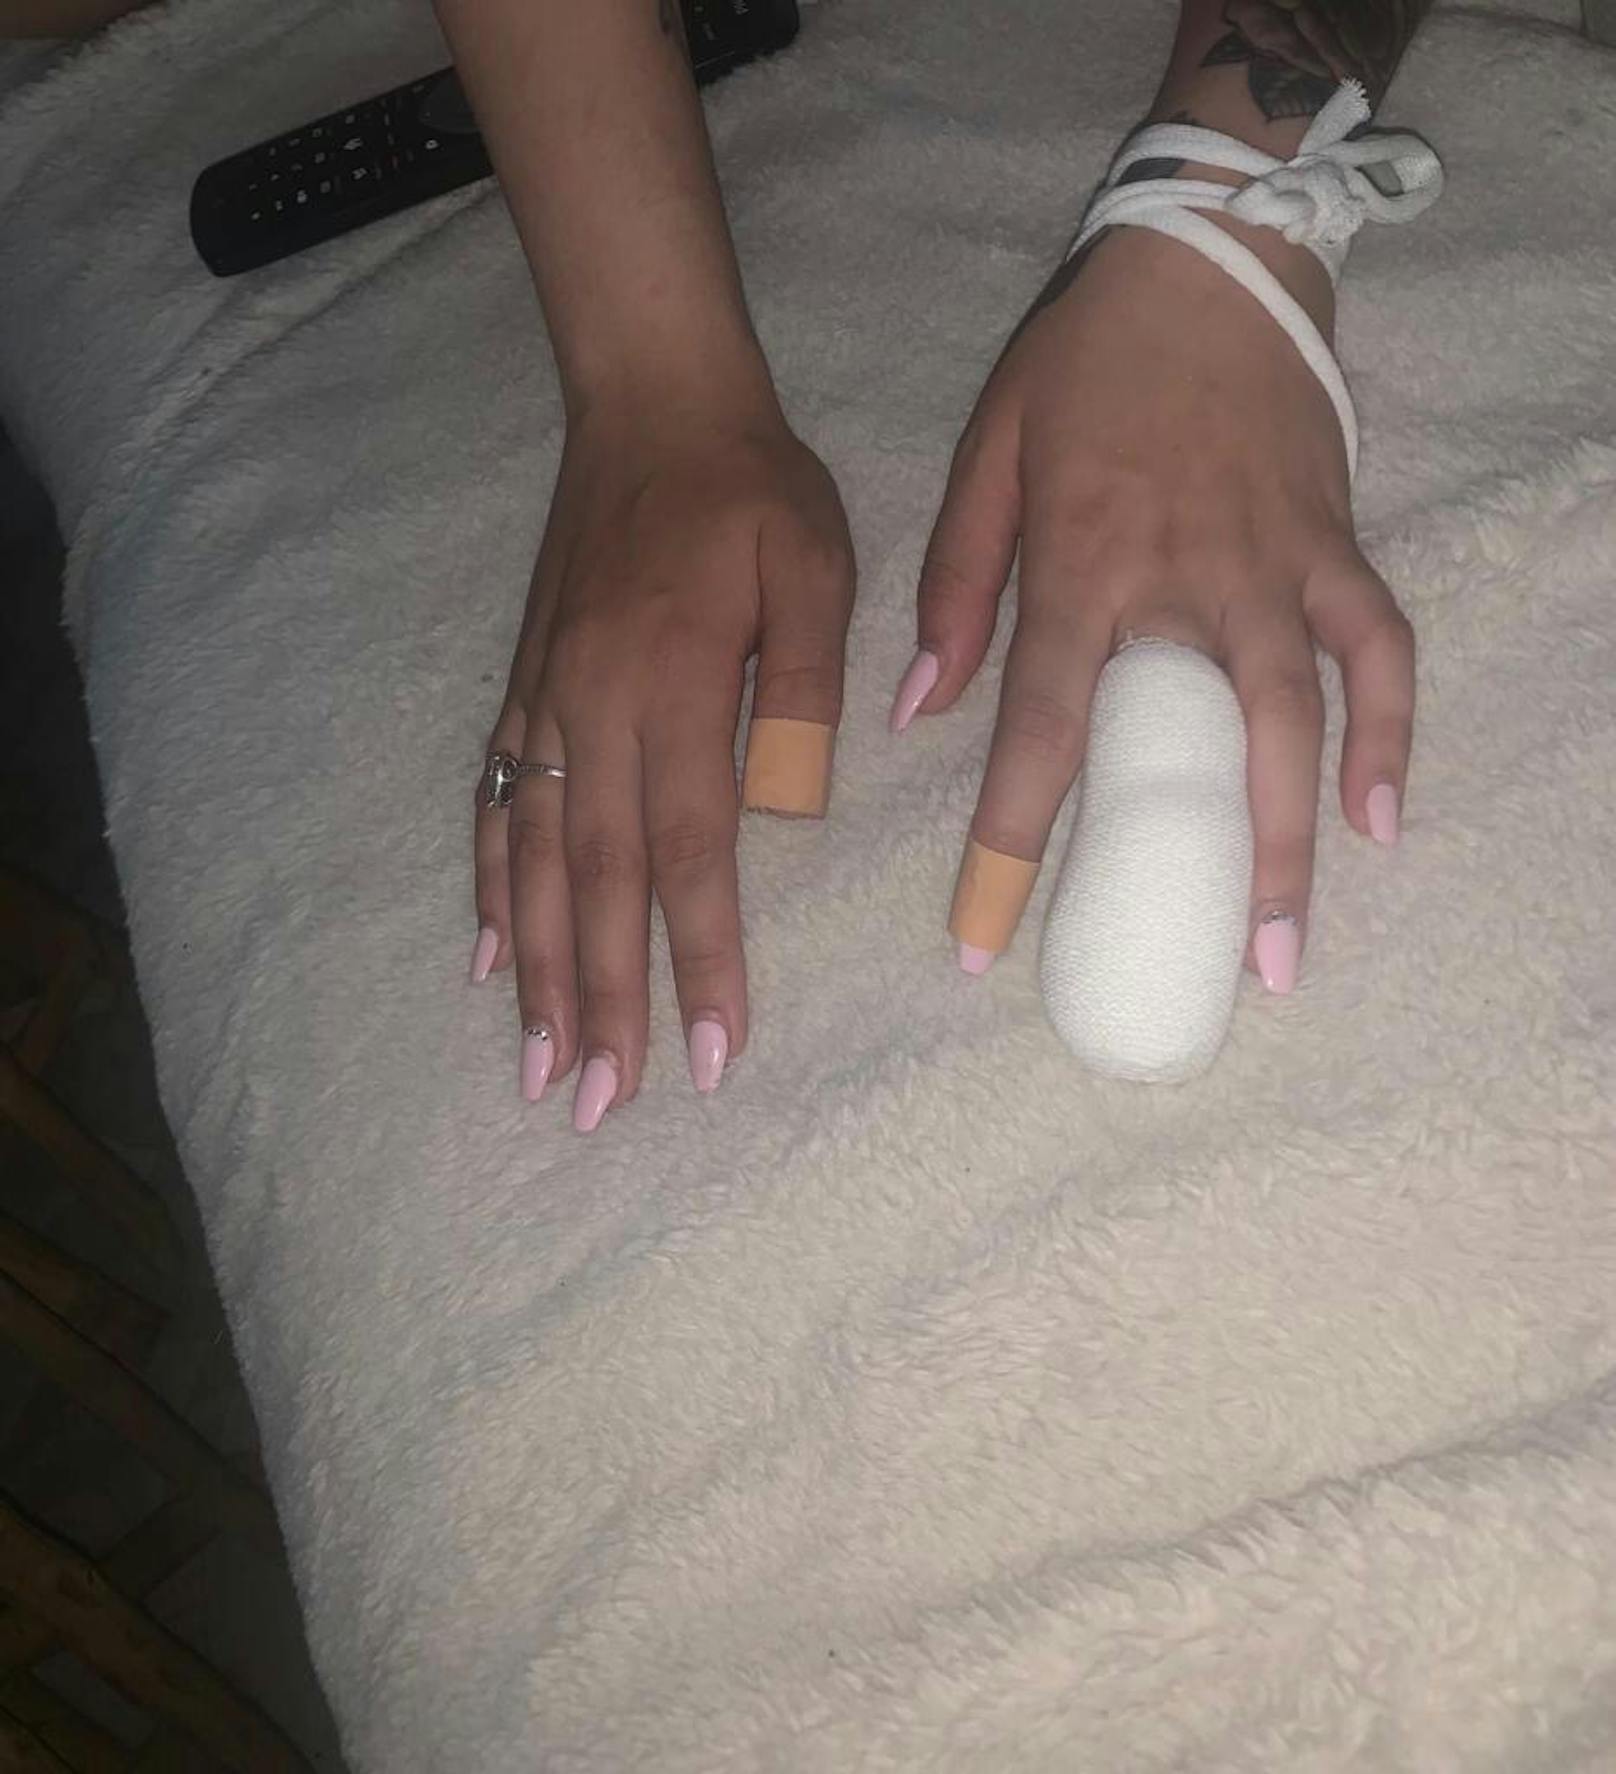 Die verletzte Frau mit dem verbundenen Finger